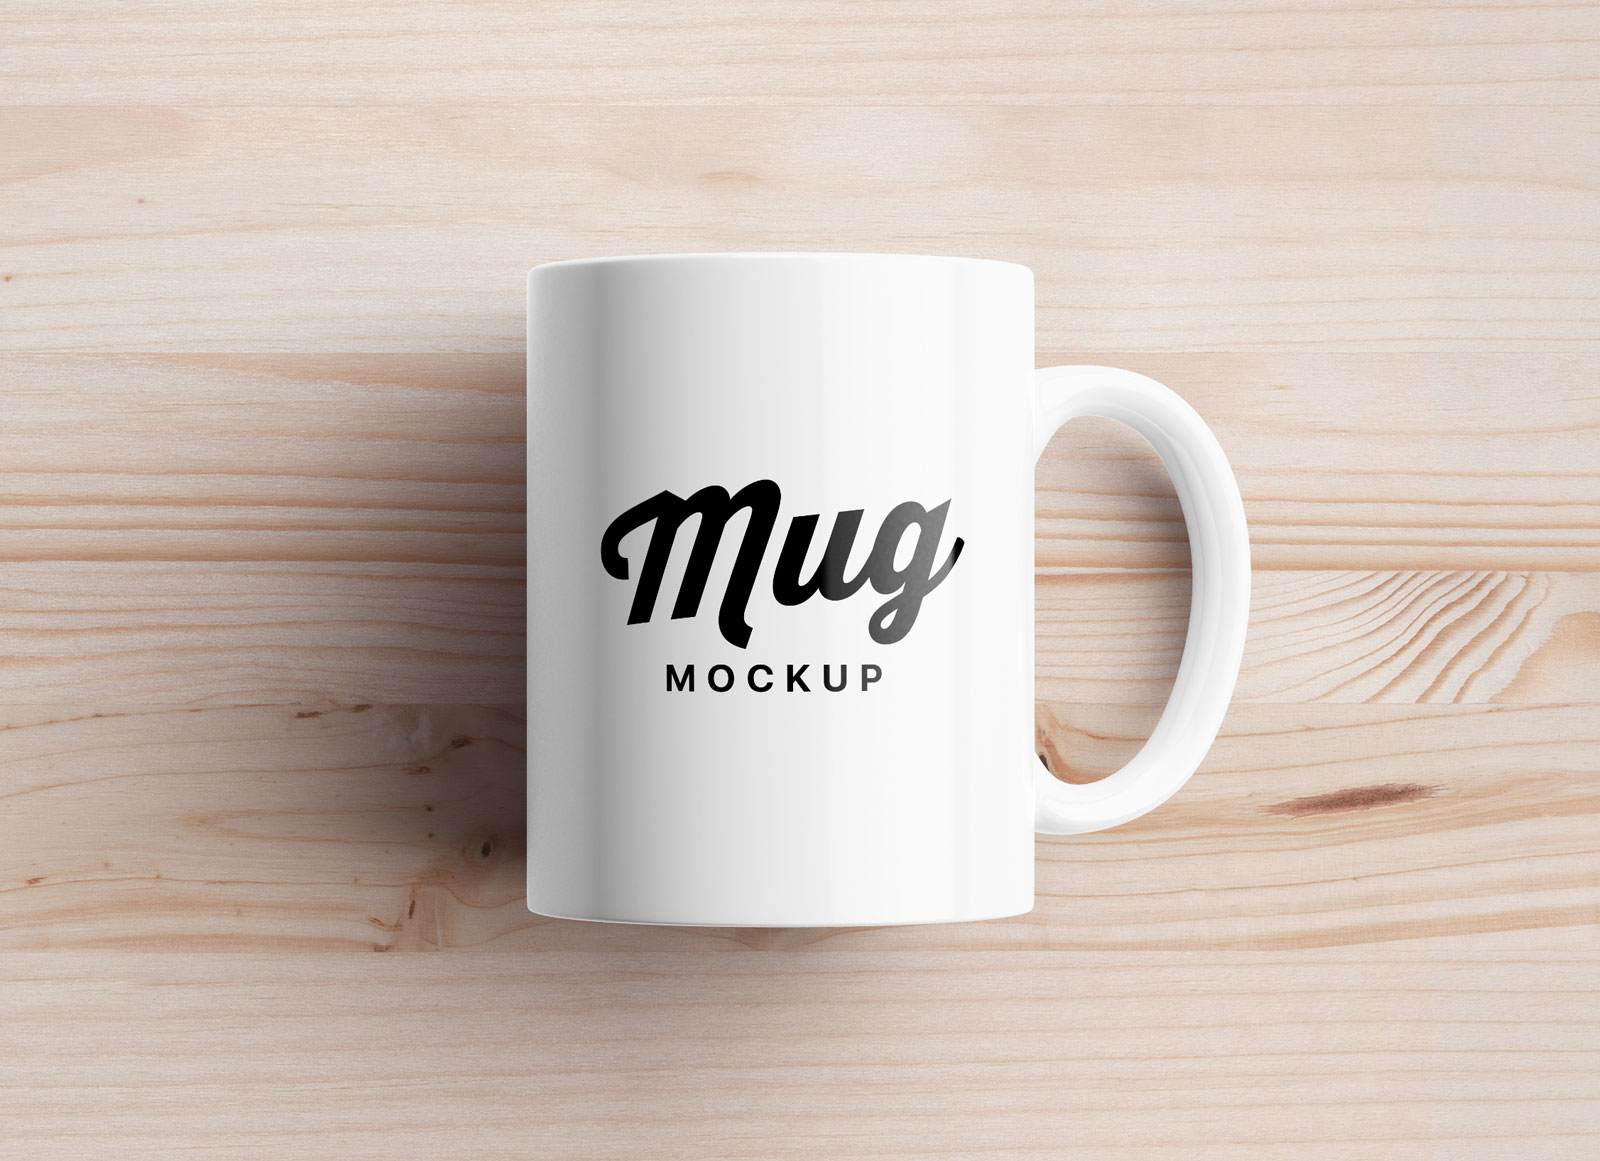 Download Free Mug Mockup PSD Set with 4 Different Angles - Good Mockups